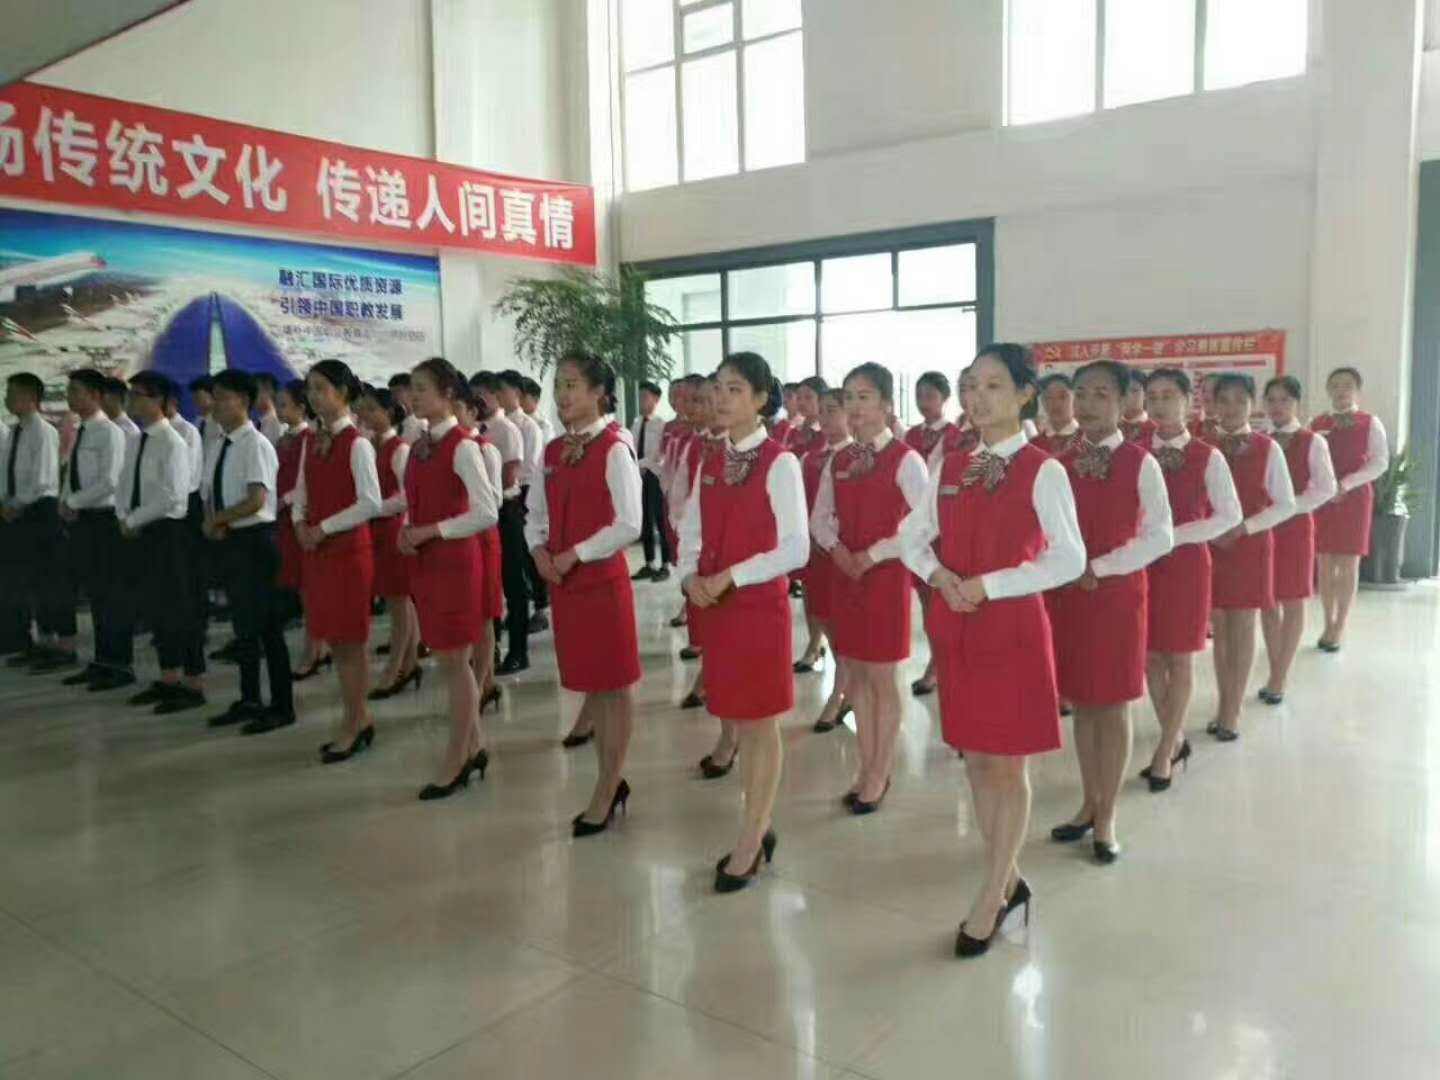 温江铁路学校的办学性质|是公立学校还是私立学校